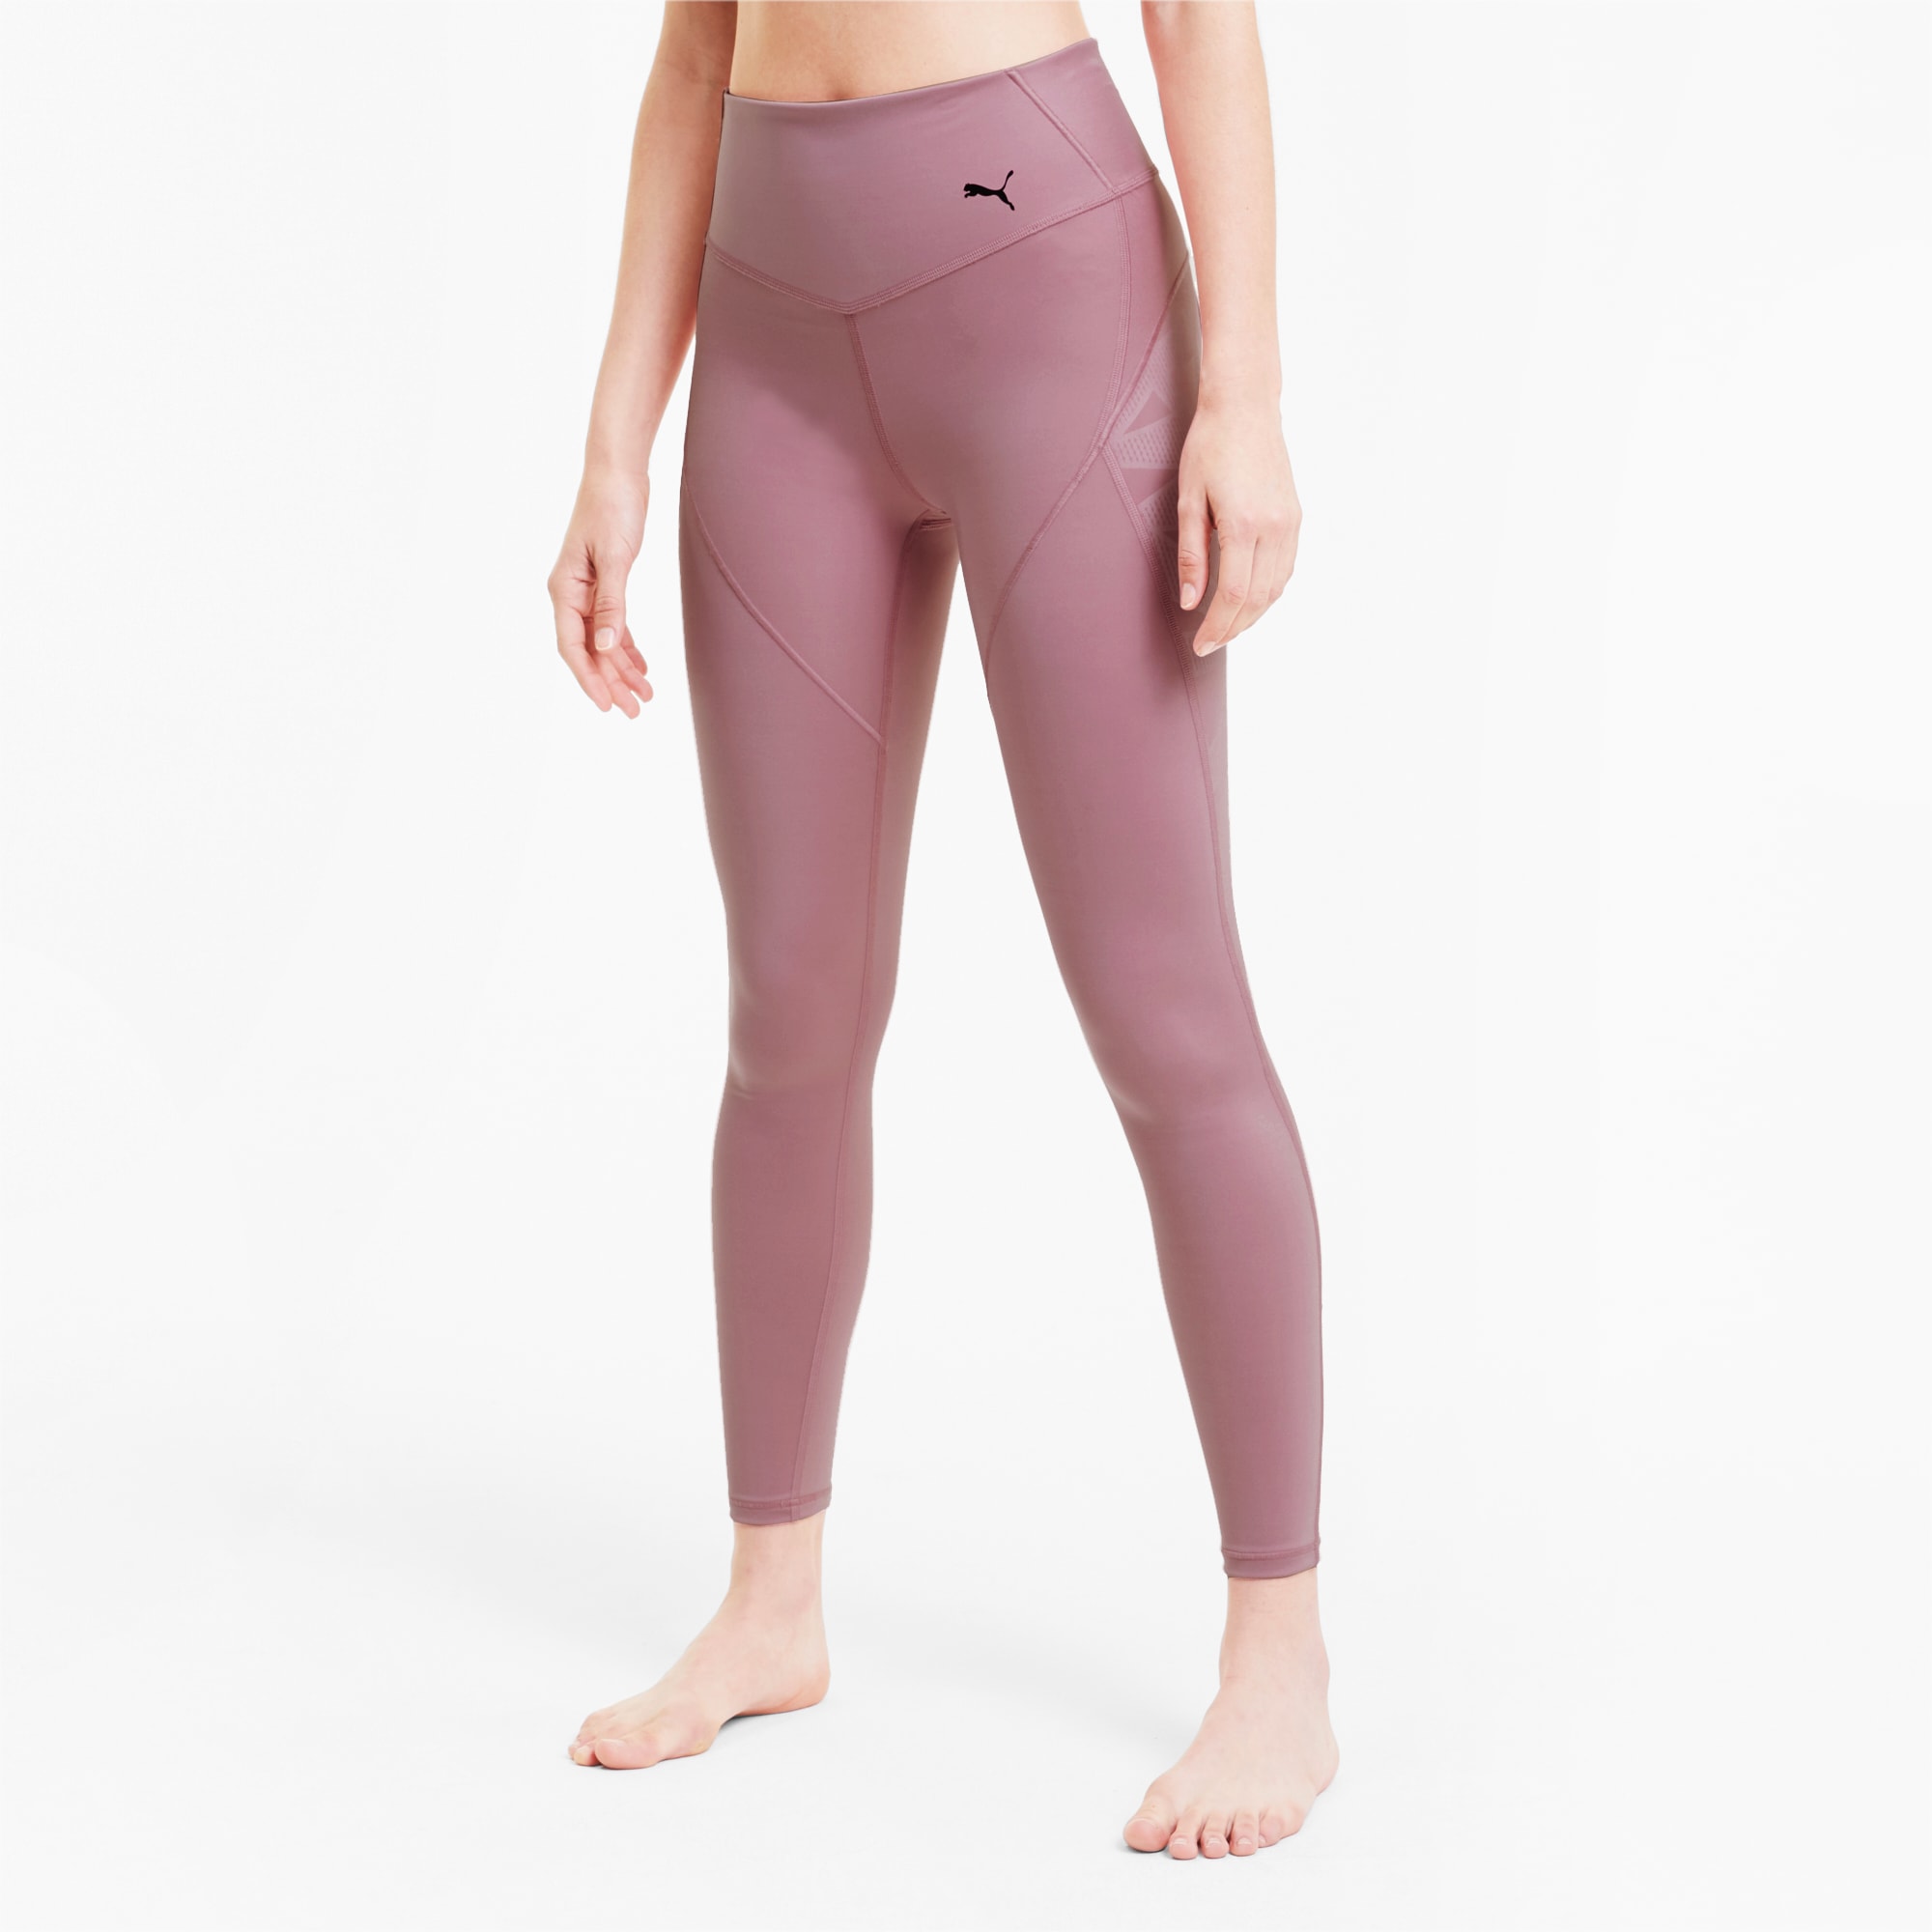 Buy Puma Women's Skinny Leggings (52137524_Rosette-Iridescent Print_L) at